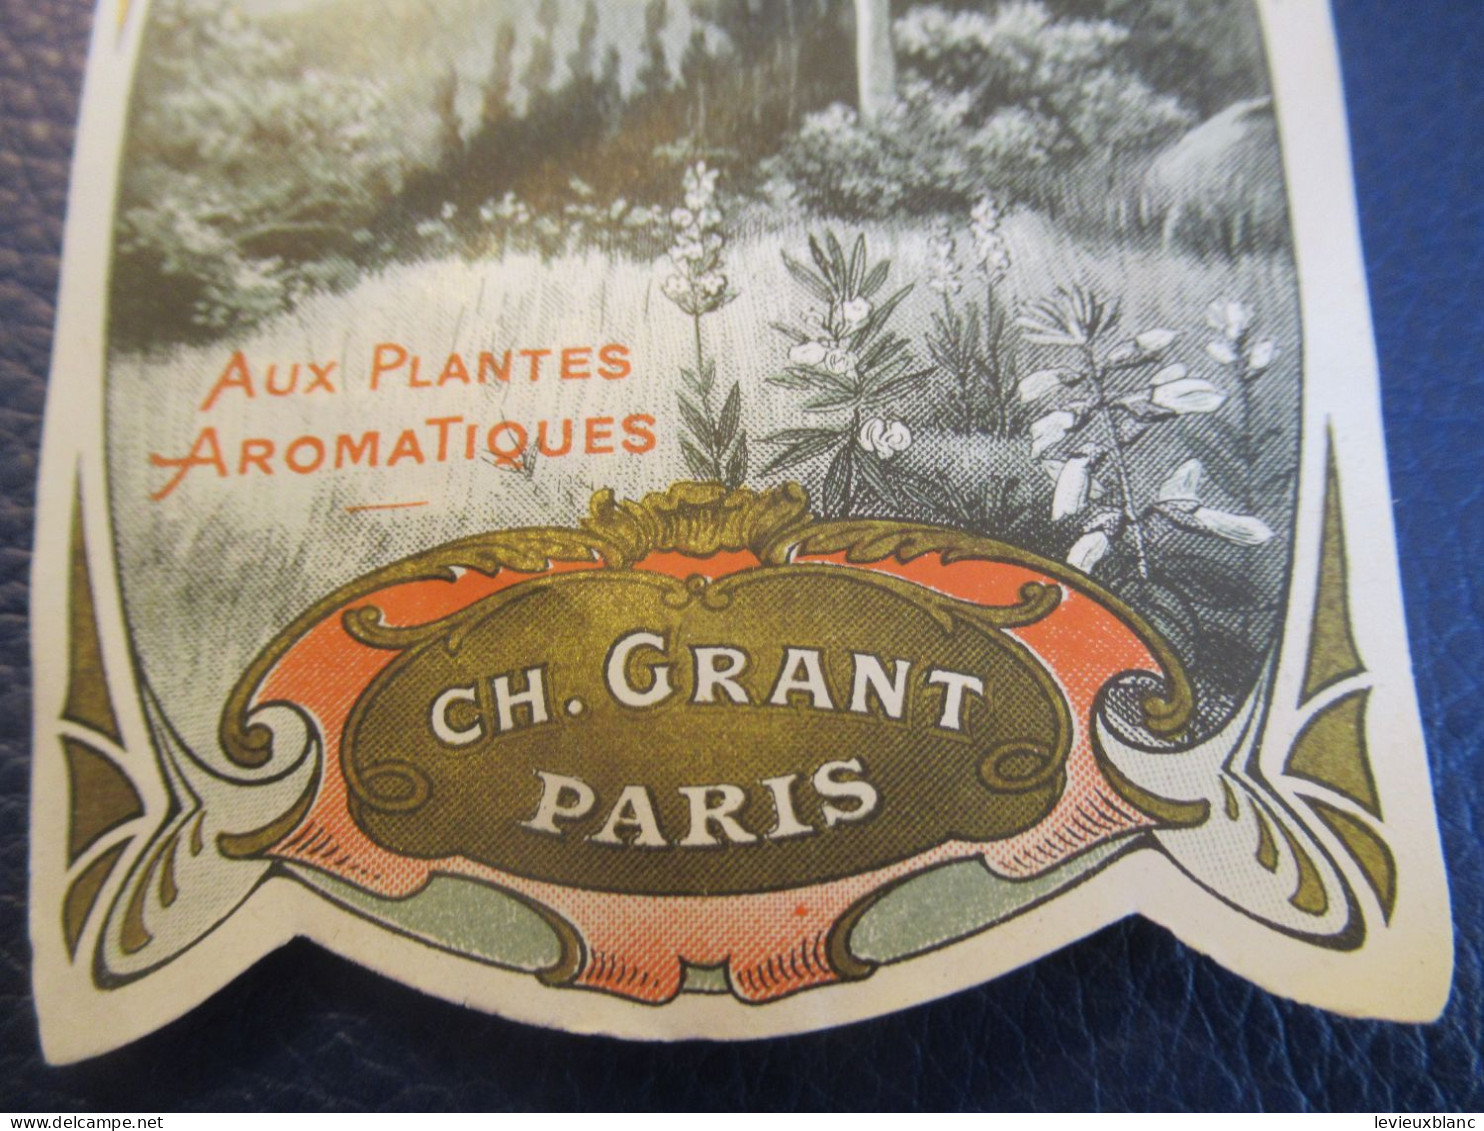 Eau de Cologne/aux plantes aromatiques/ "LA CEVENOLE"/ Ch. GRANT , Paris/Fortifiante & musculaire/Vers 1930      ETIQ198